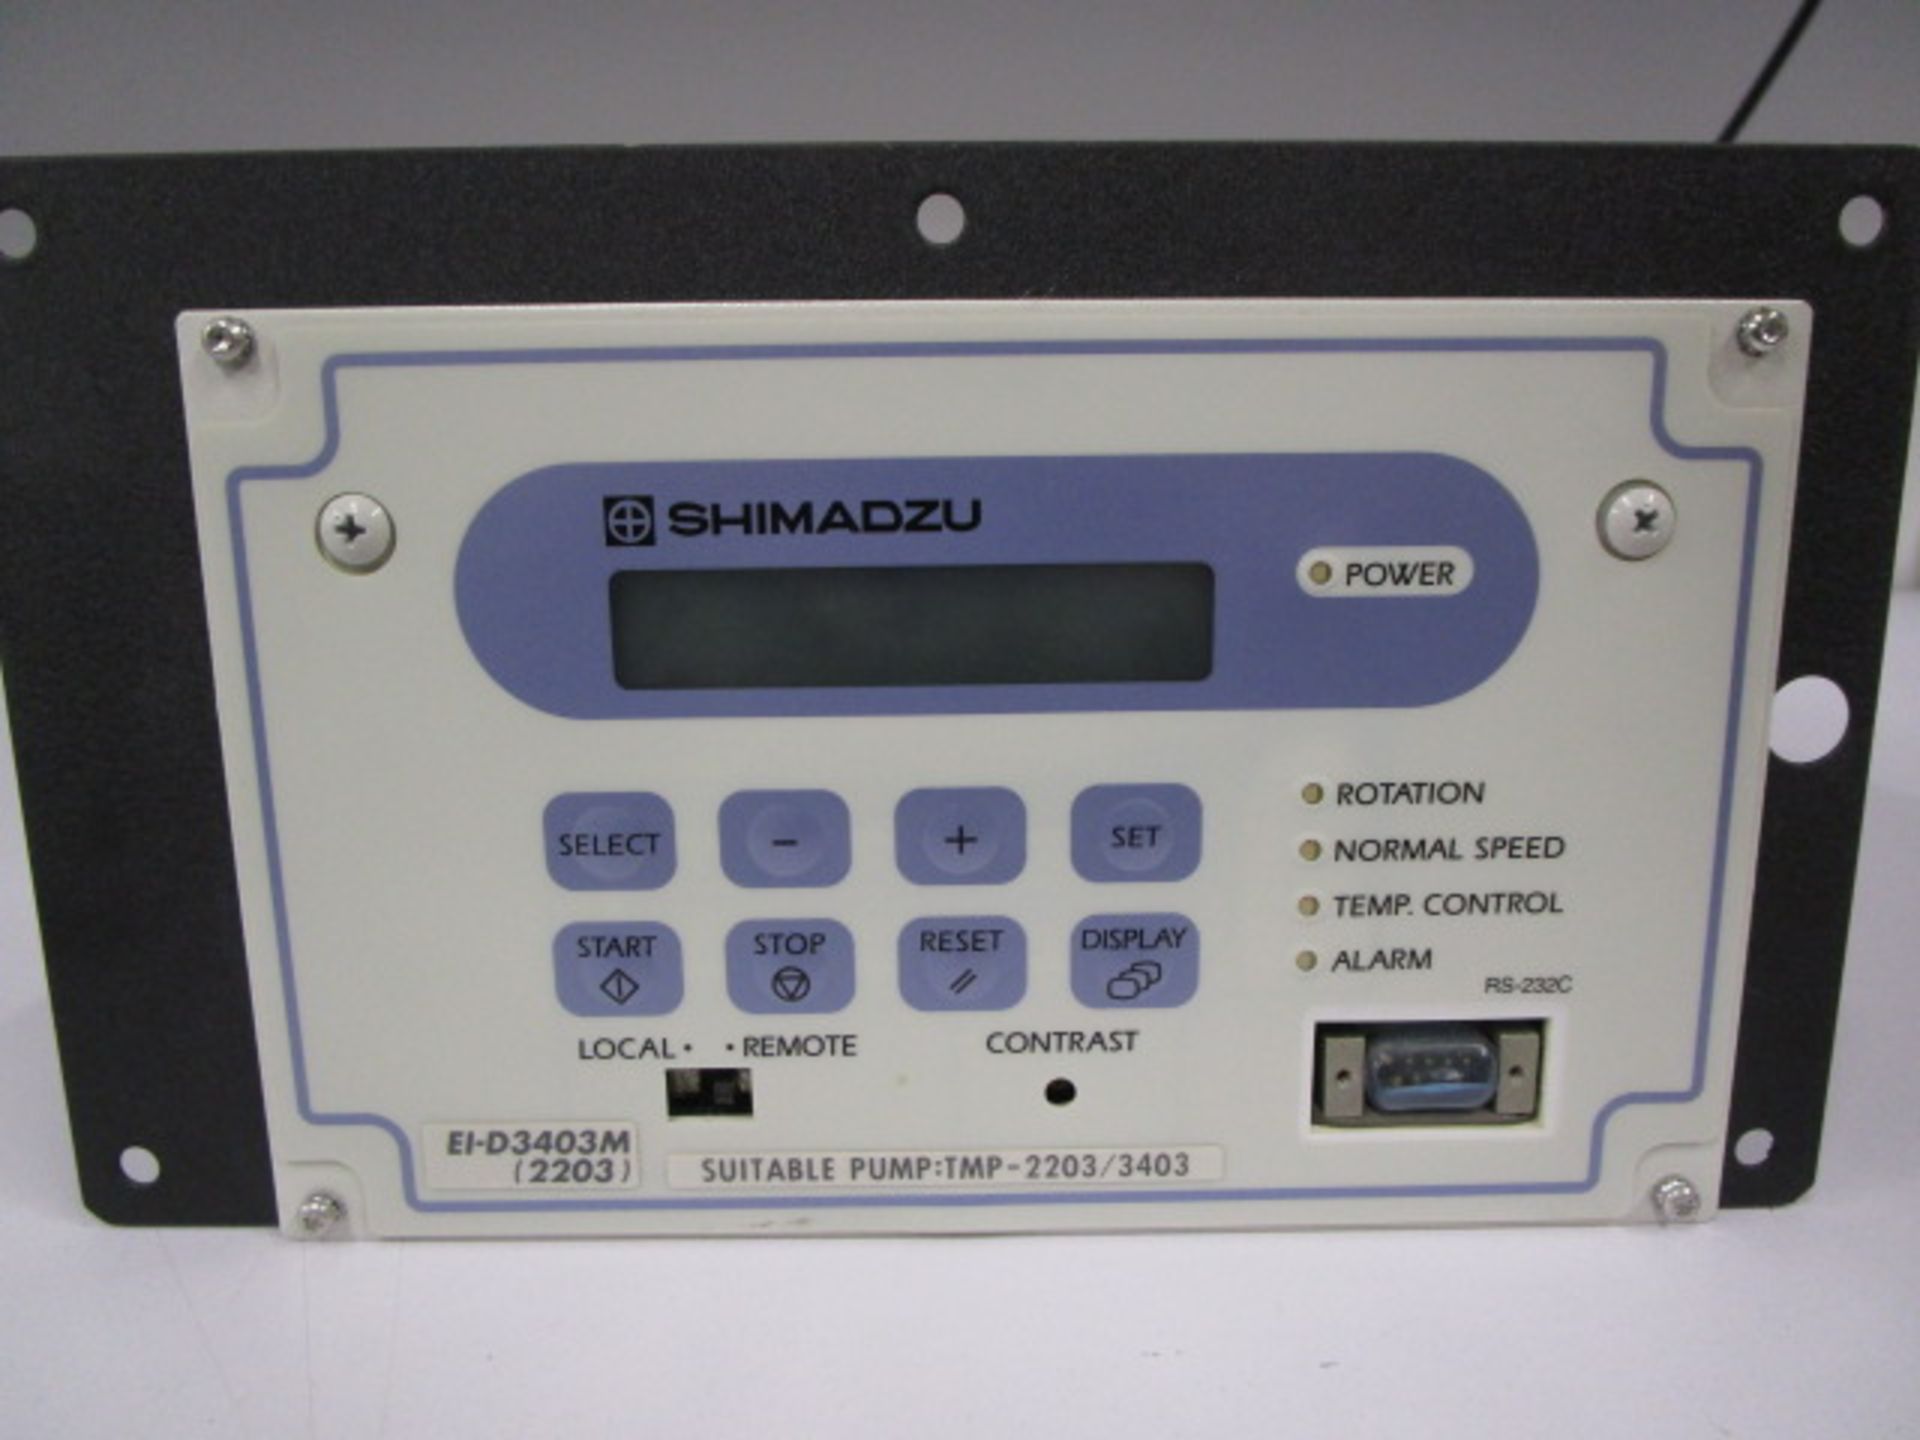 SHIMADZU EI-D3403M (2203) SUITABLE PUMP TMP2203 /3403 CONTROLLER - Image 2 of 7